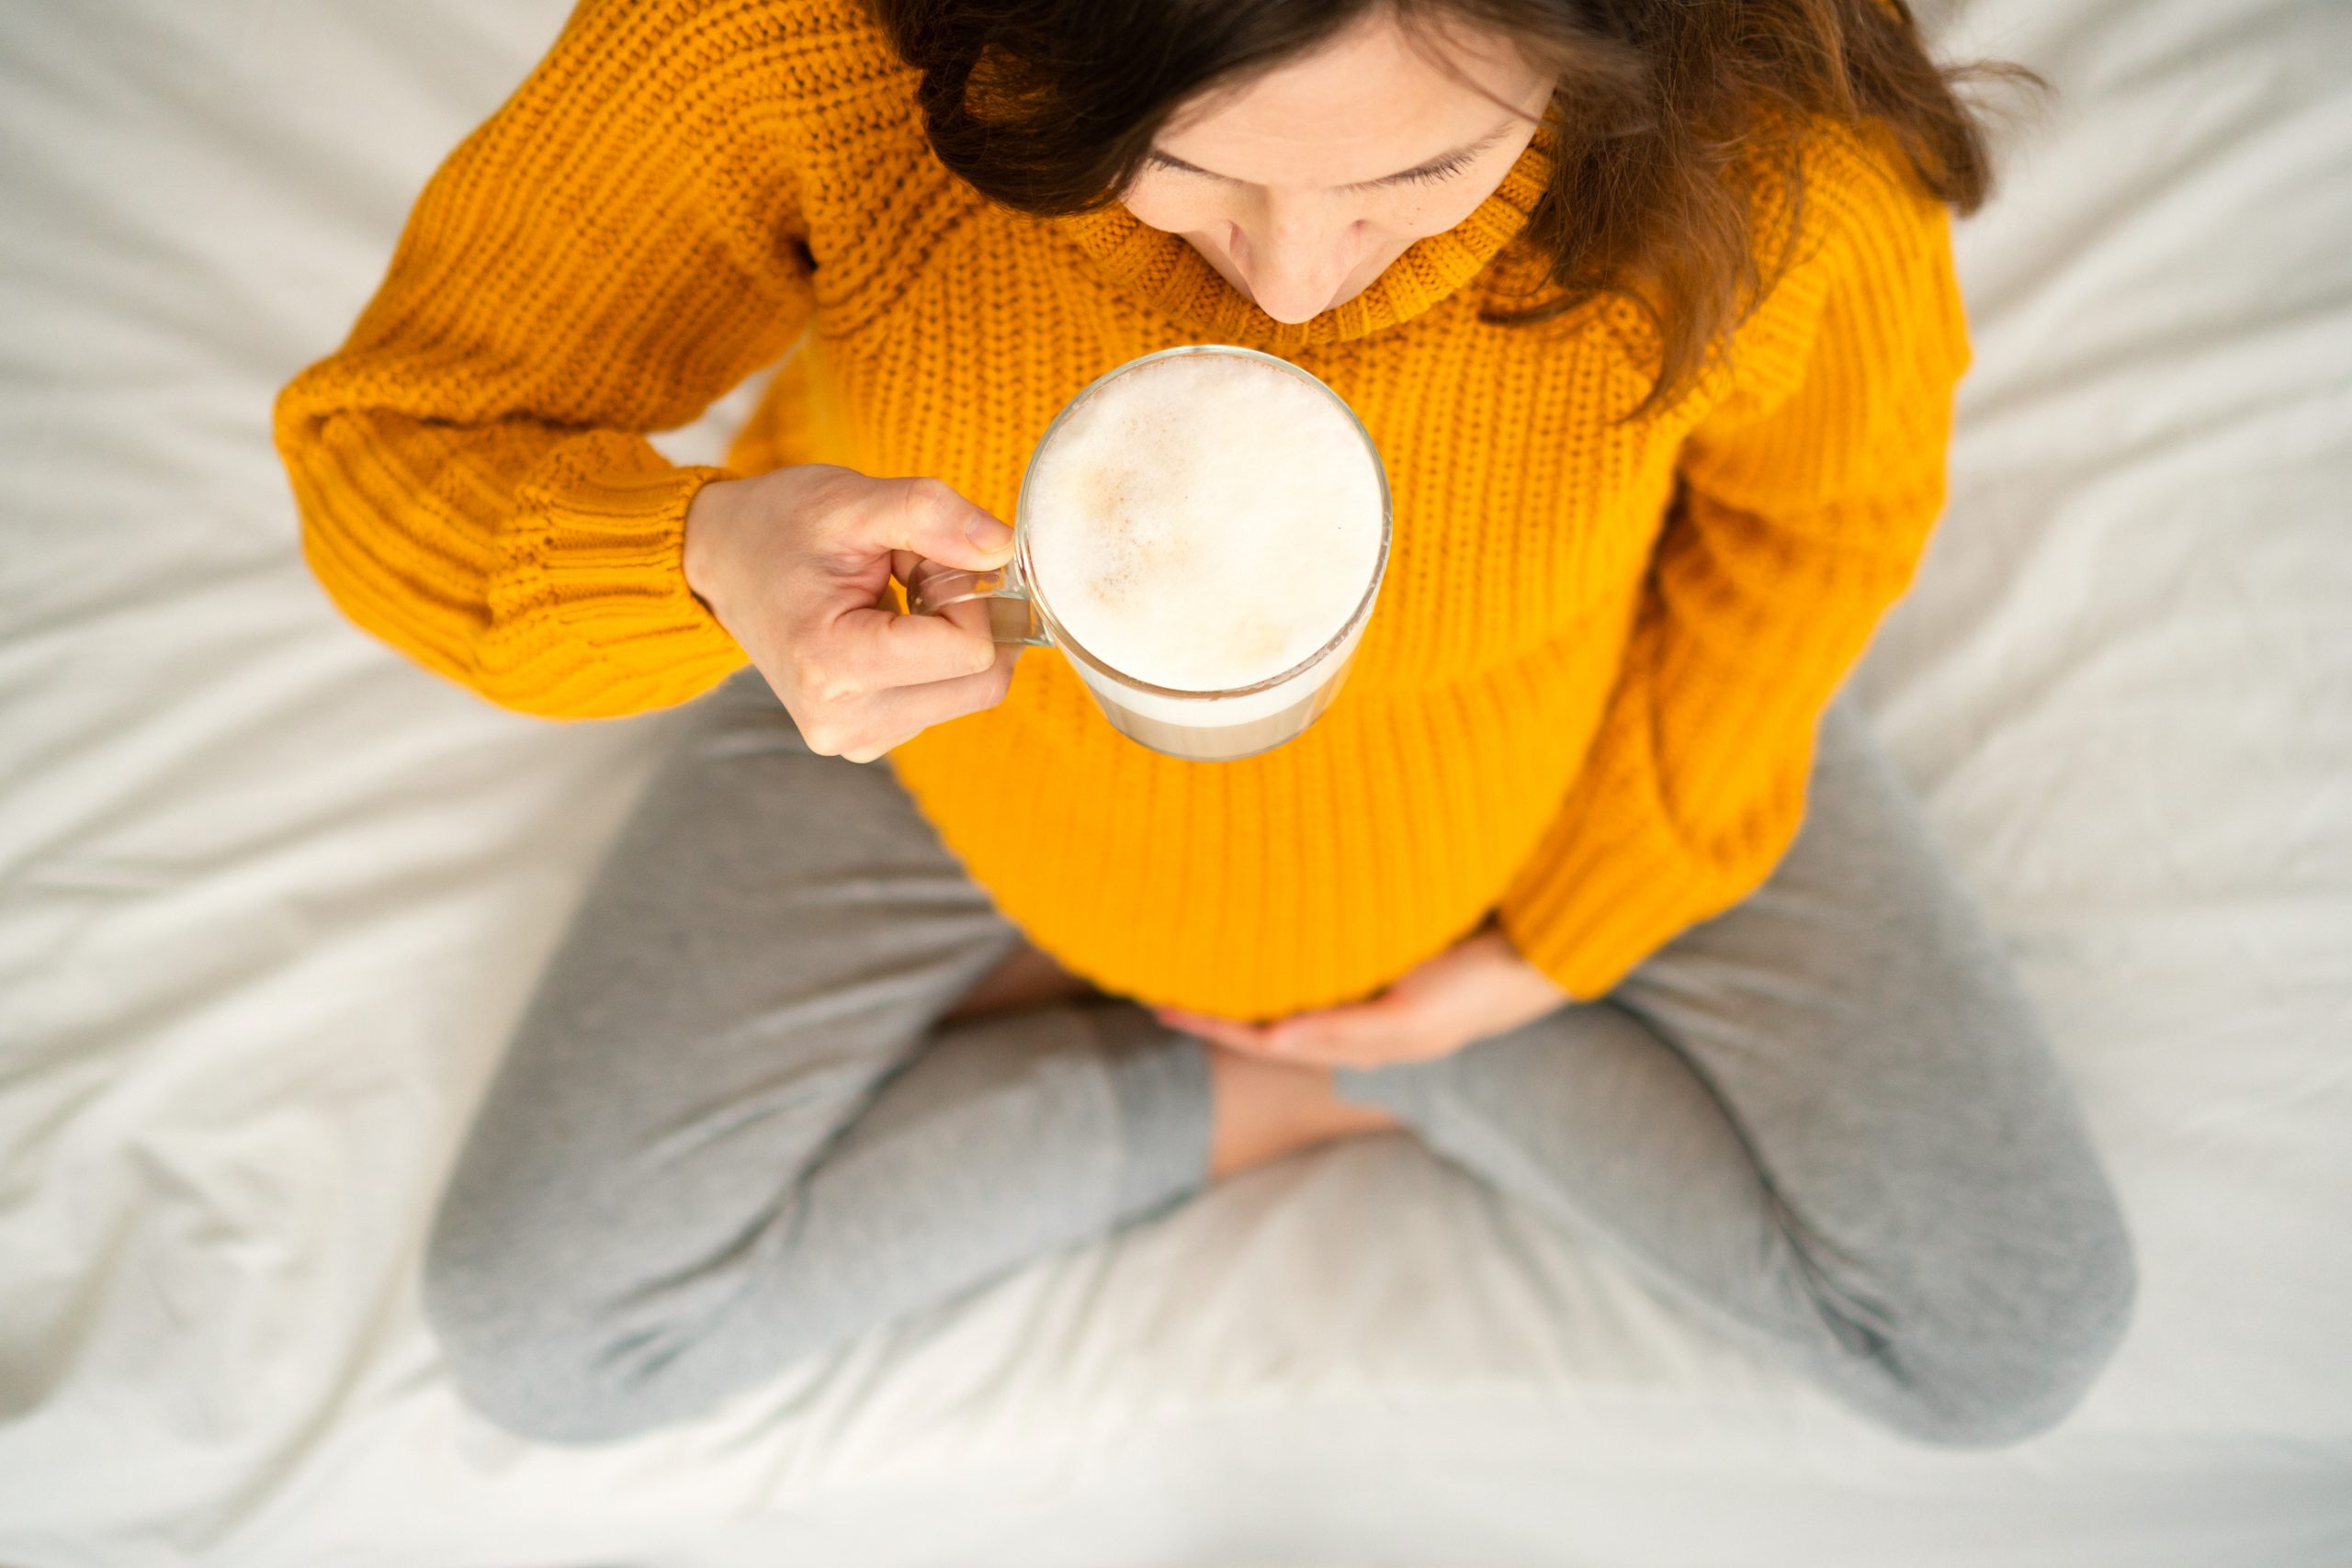 Beber café en el embarazo afecta a la estatura del bebé